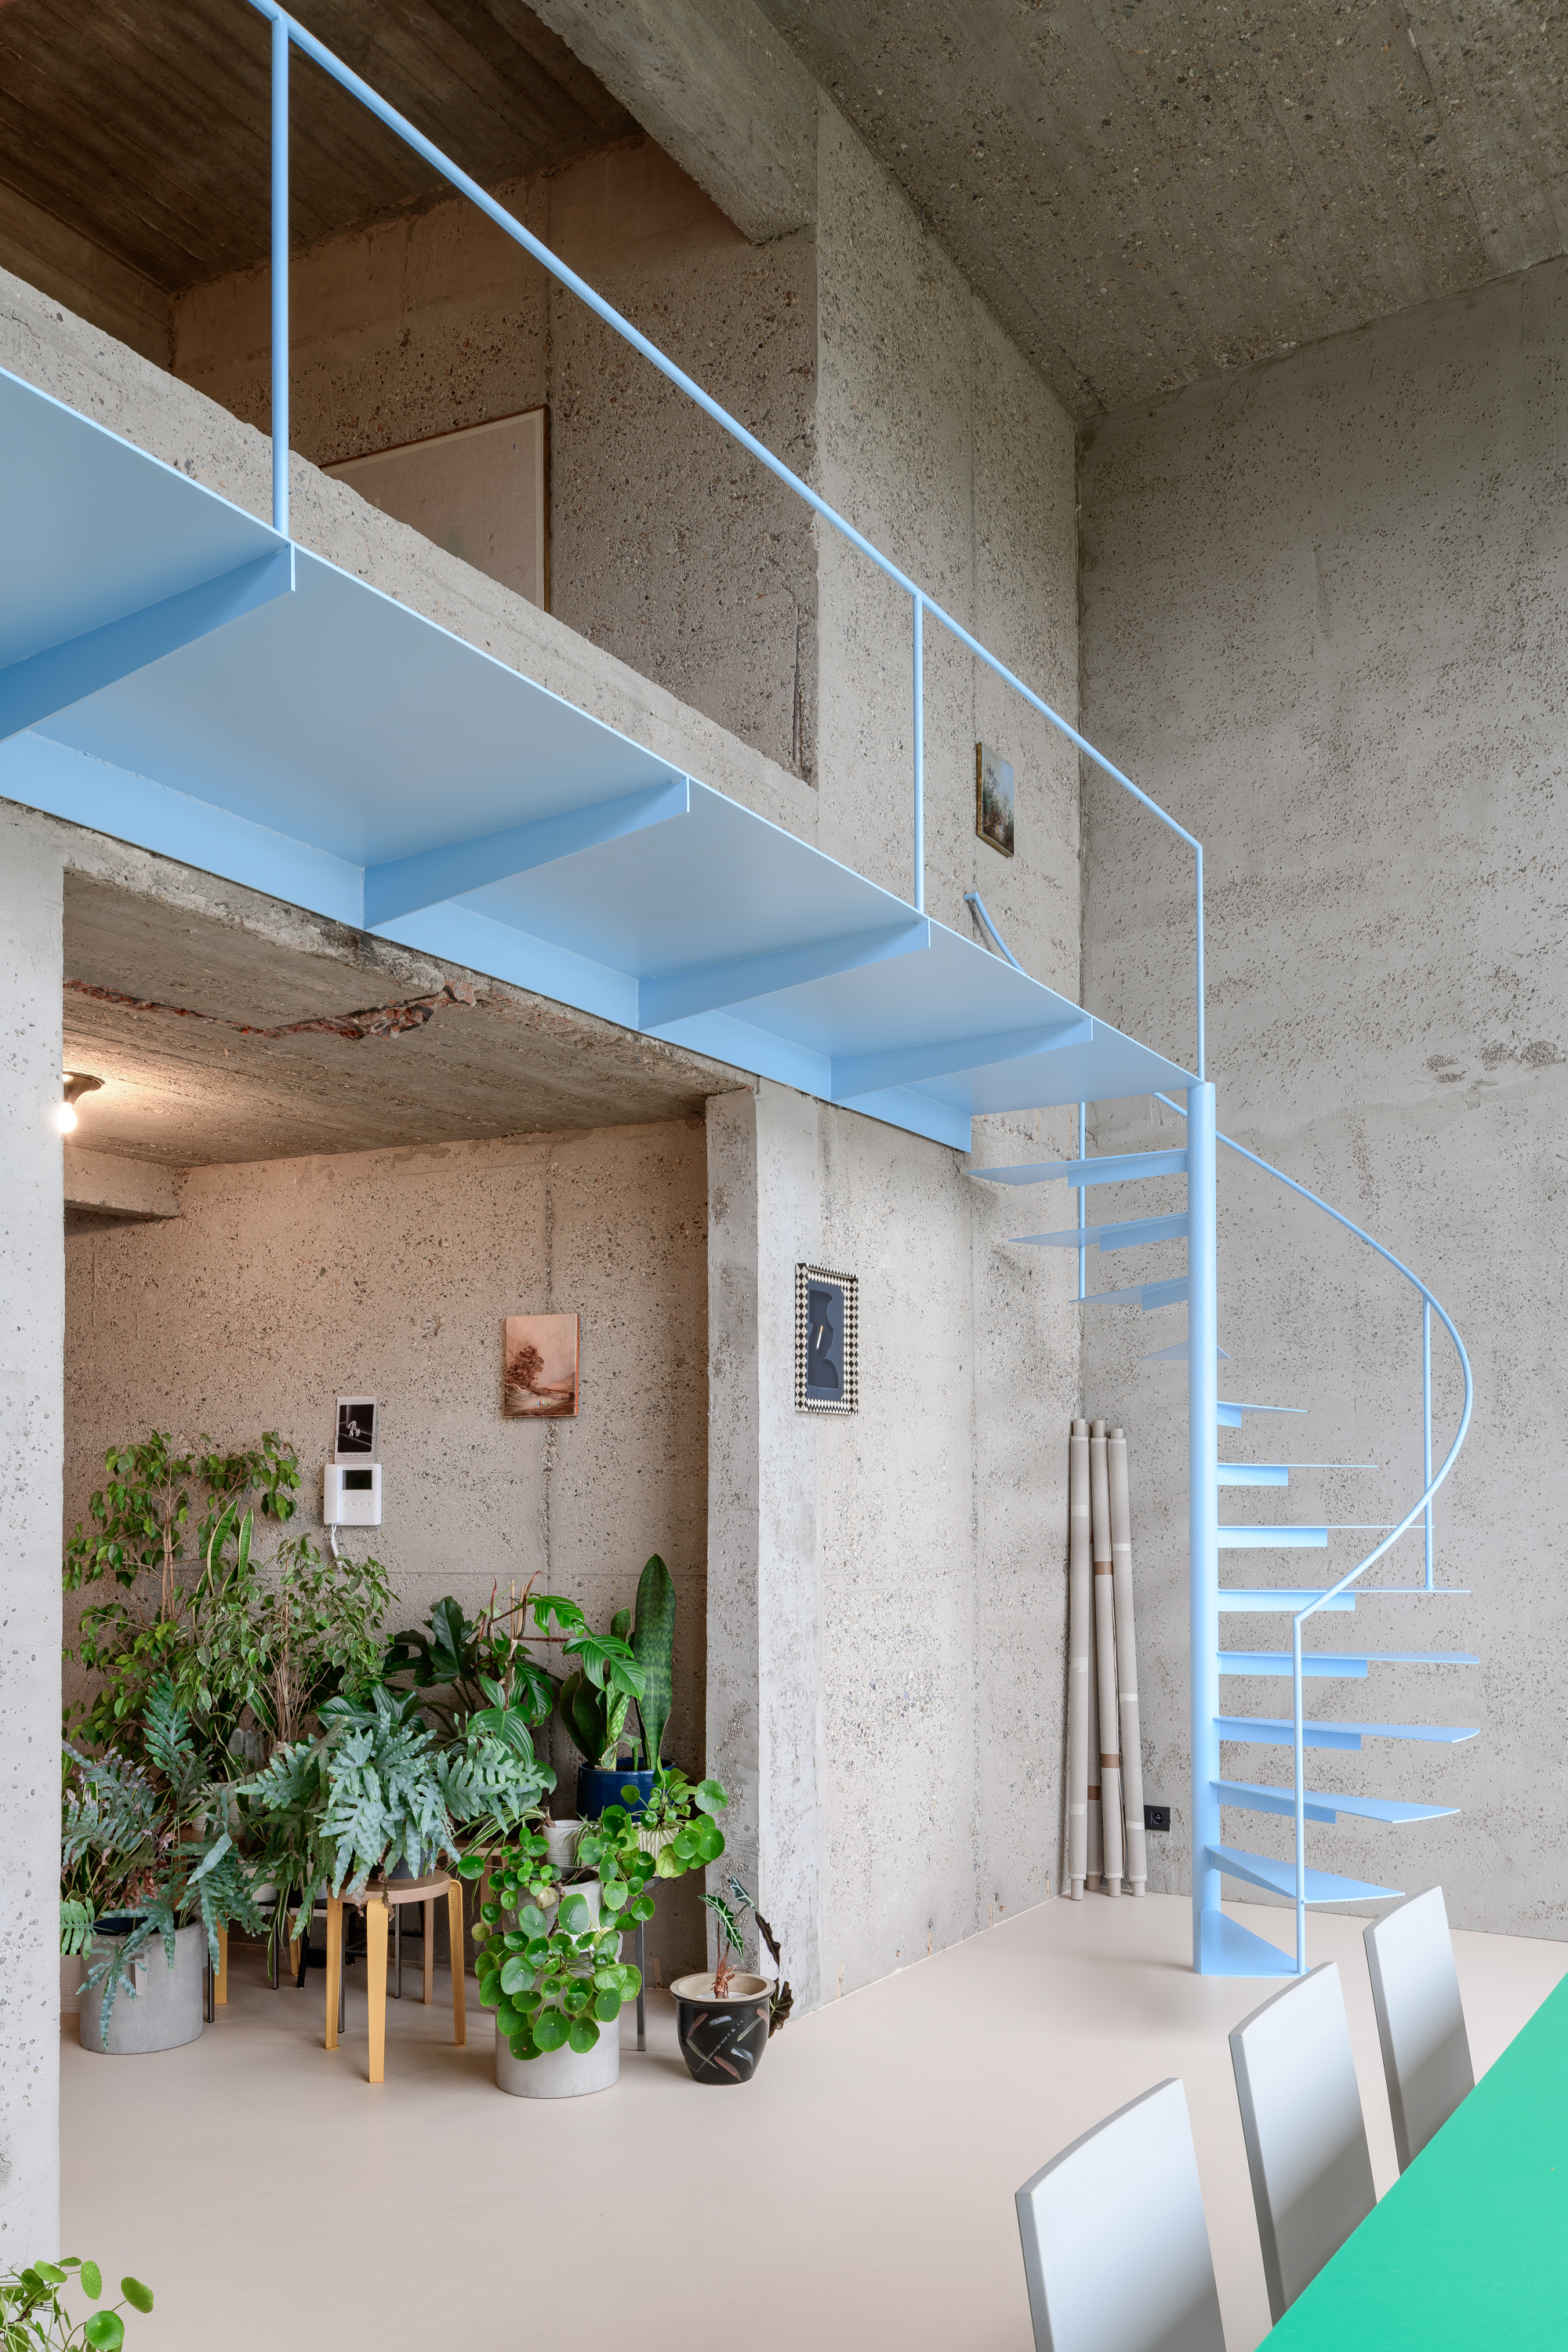 图片[1]|粗糙混凝土墙面，河滨大厦的粗野主义公寓 / Studio Okami Architects|ART-Arrakis | 建筑室内设计的创新与灵感